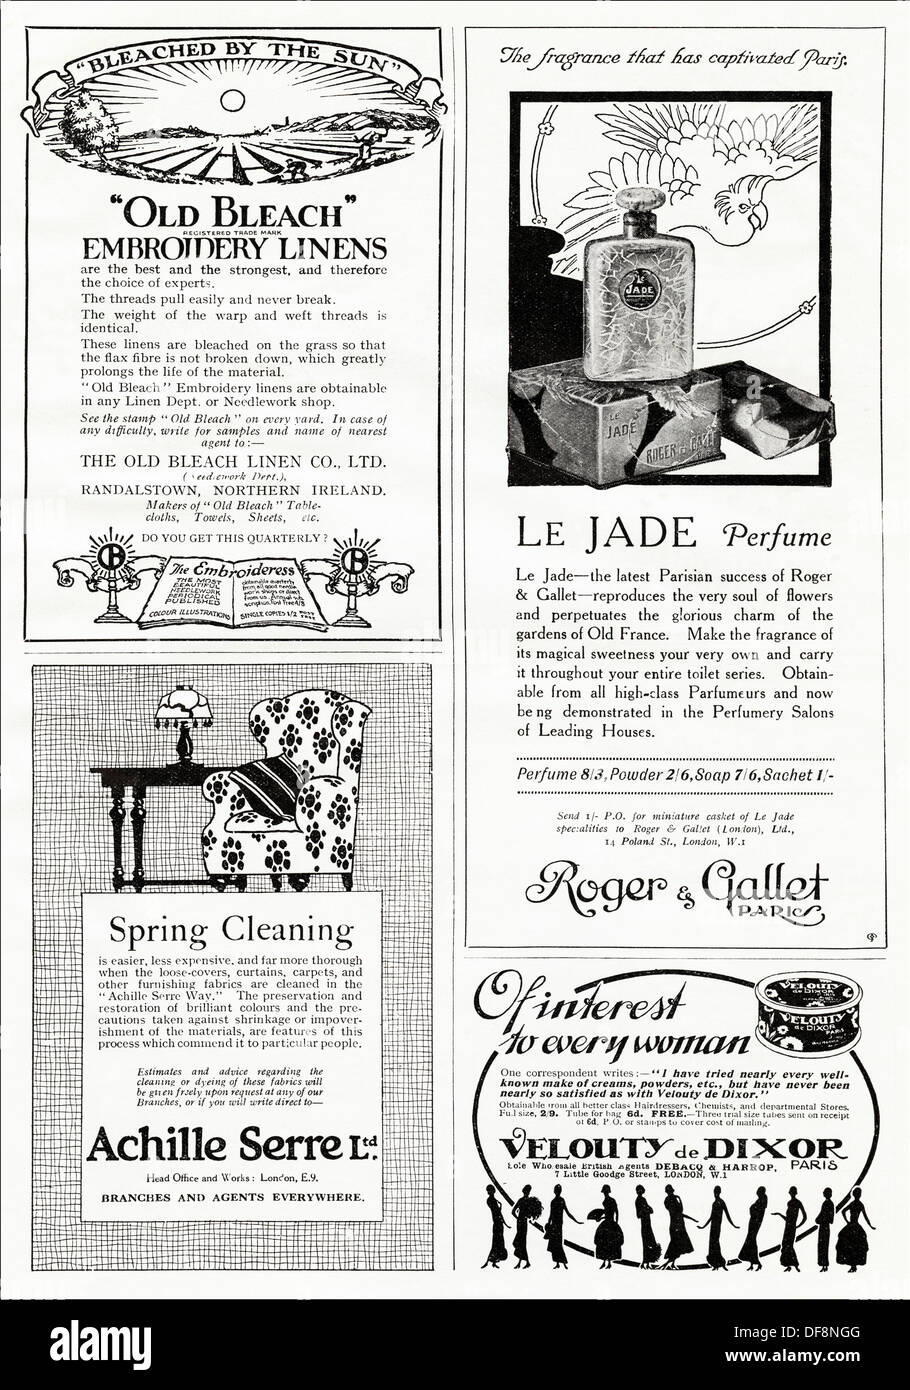 Pagina di annunci. Originale di 1920s Annunci pubblicitari di prodotti tipici del periodo, la rivista dei consumatori annunci circa 1924 Foto Stock